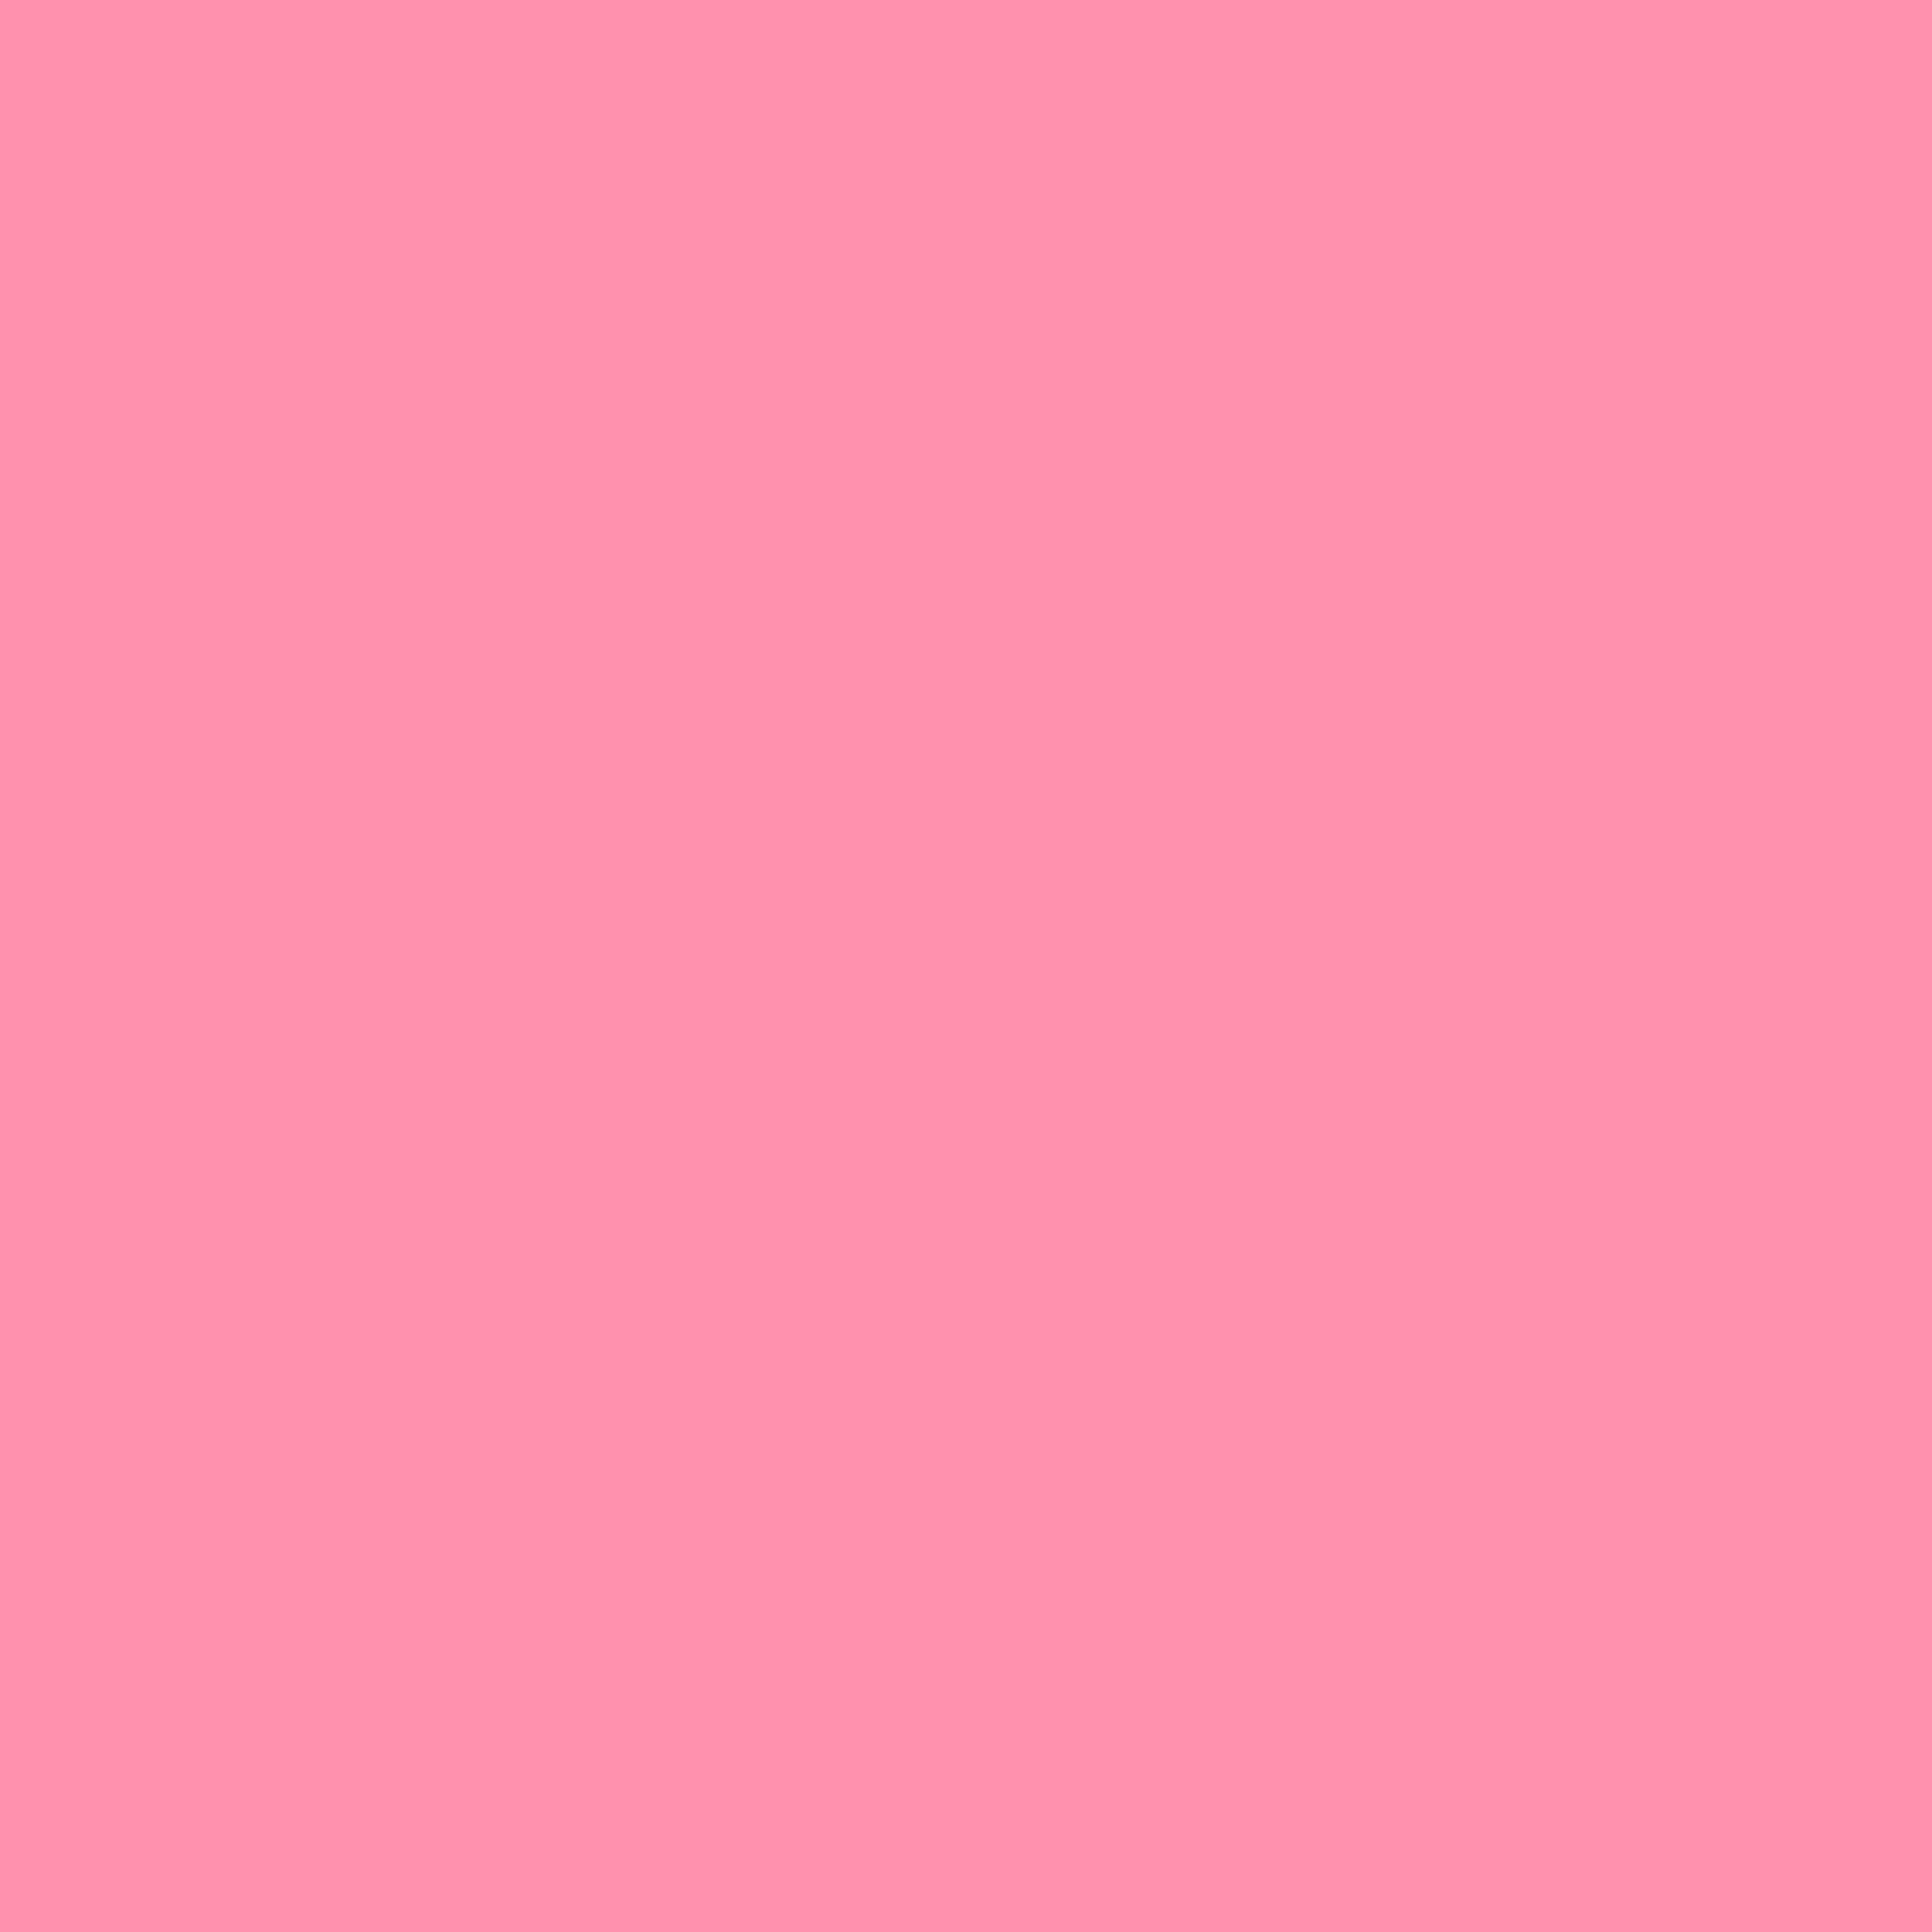 3600x3600 Baker-Miller Pink Solid Color Background